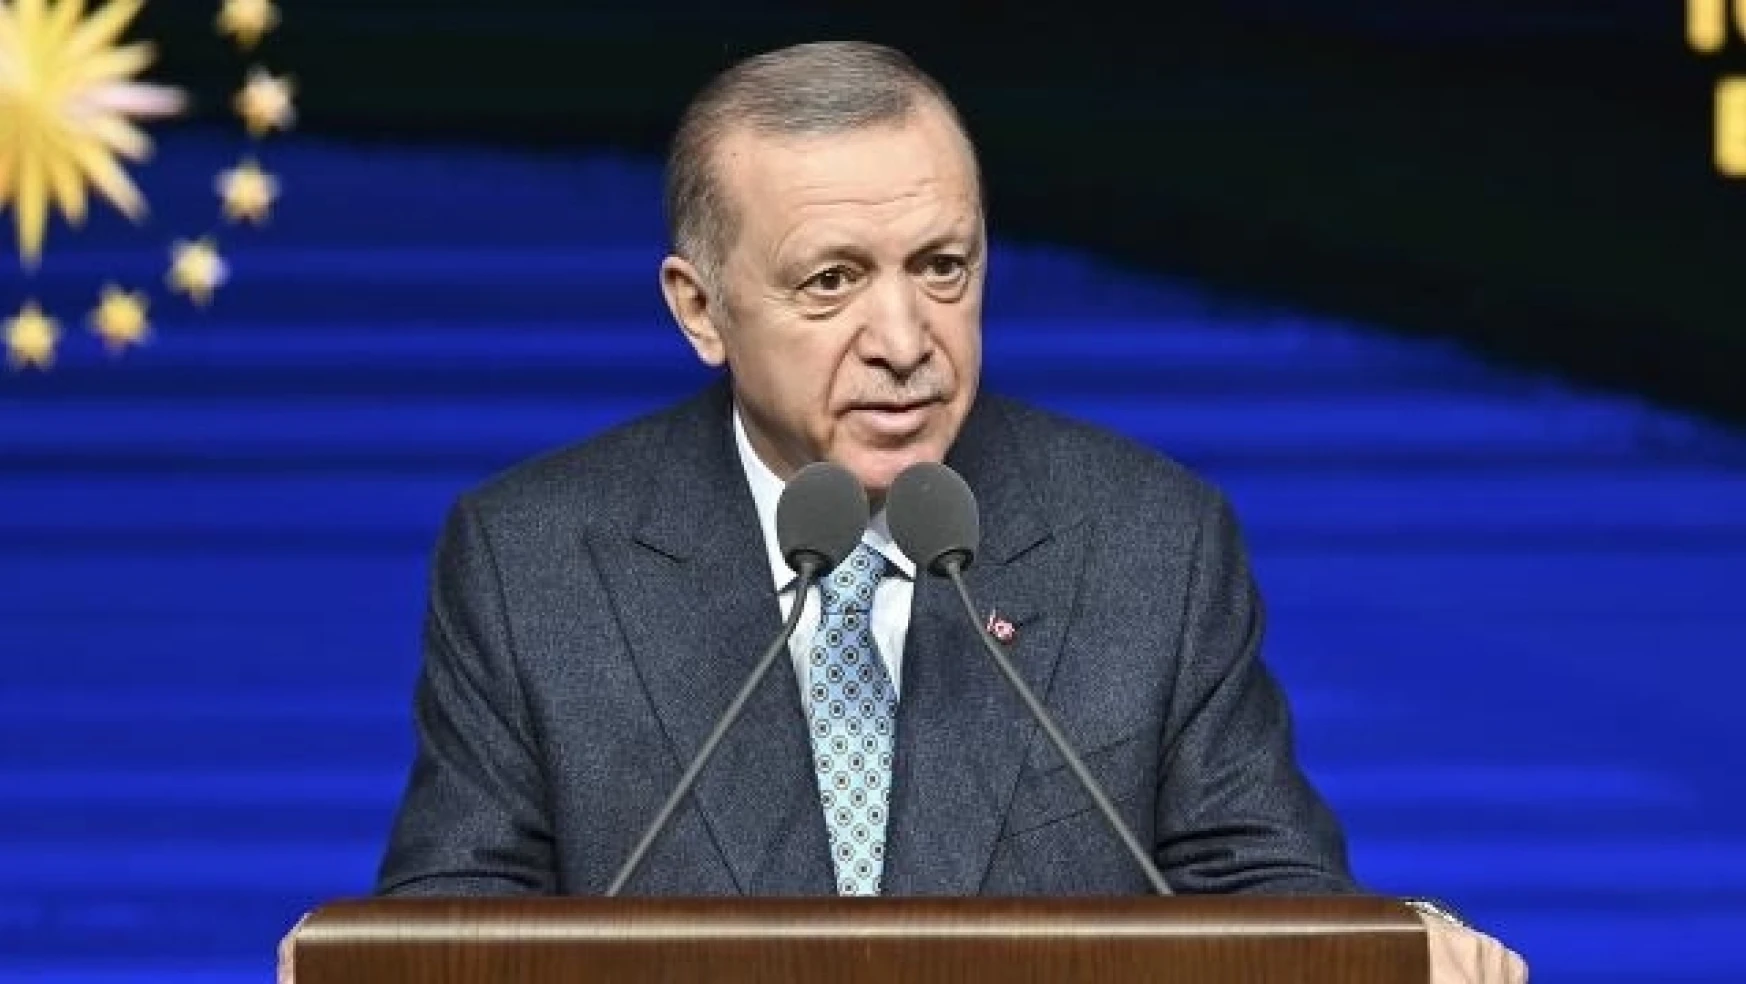 Cumhurbaşkanı Erdoğan'dan müjde üstüne müjde! Teknoloji destek paketi açıklandı